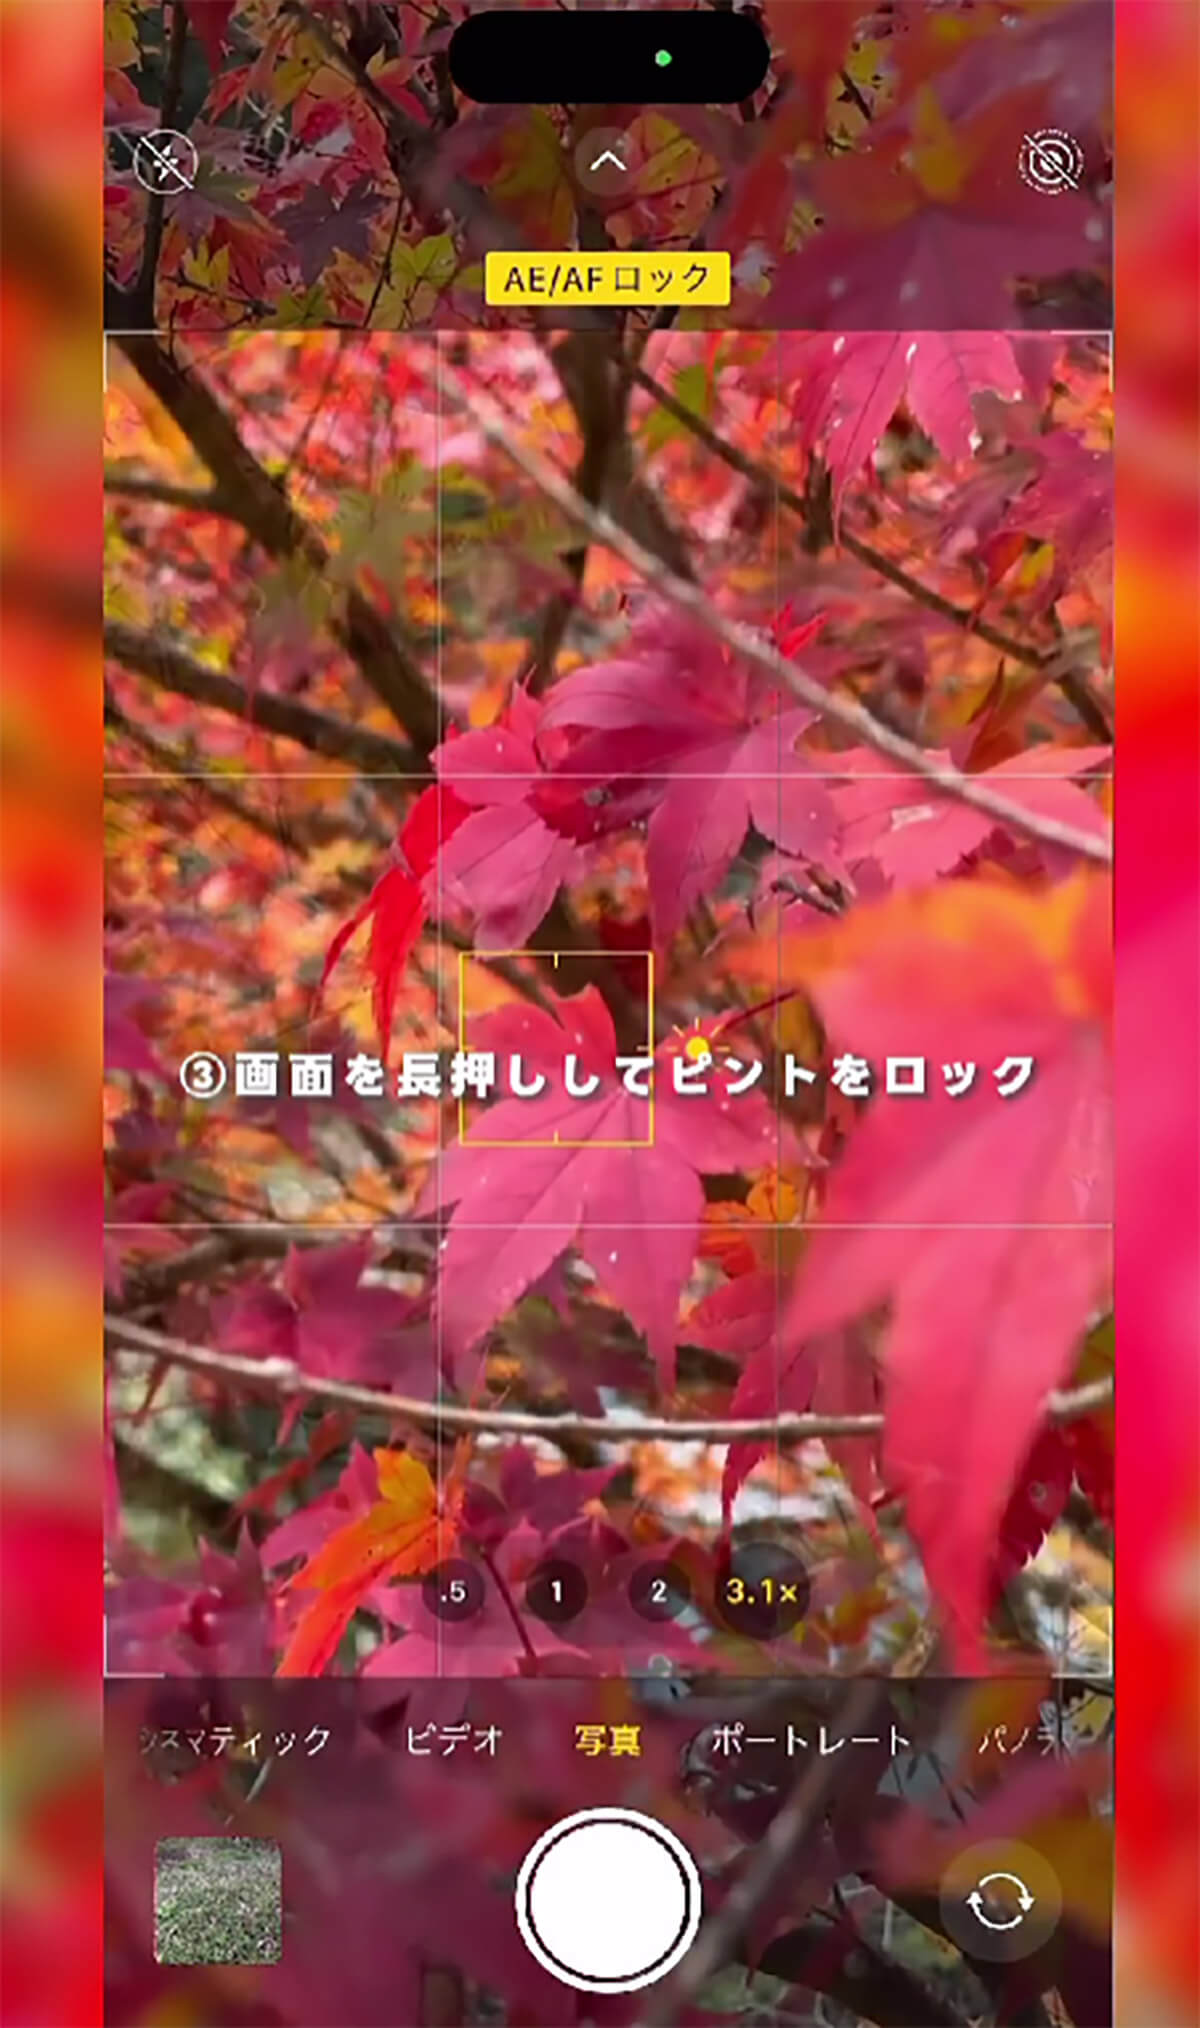  iPhoneのカメラで紅葉を綺麗に撮影する方法3